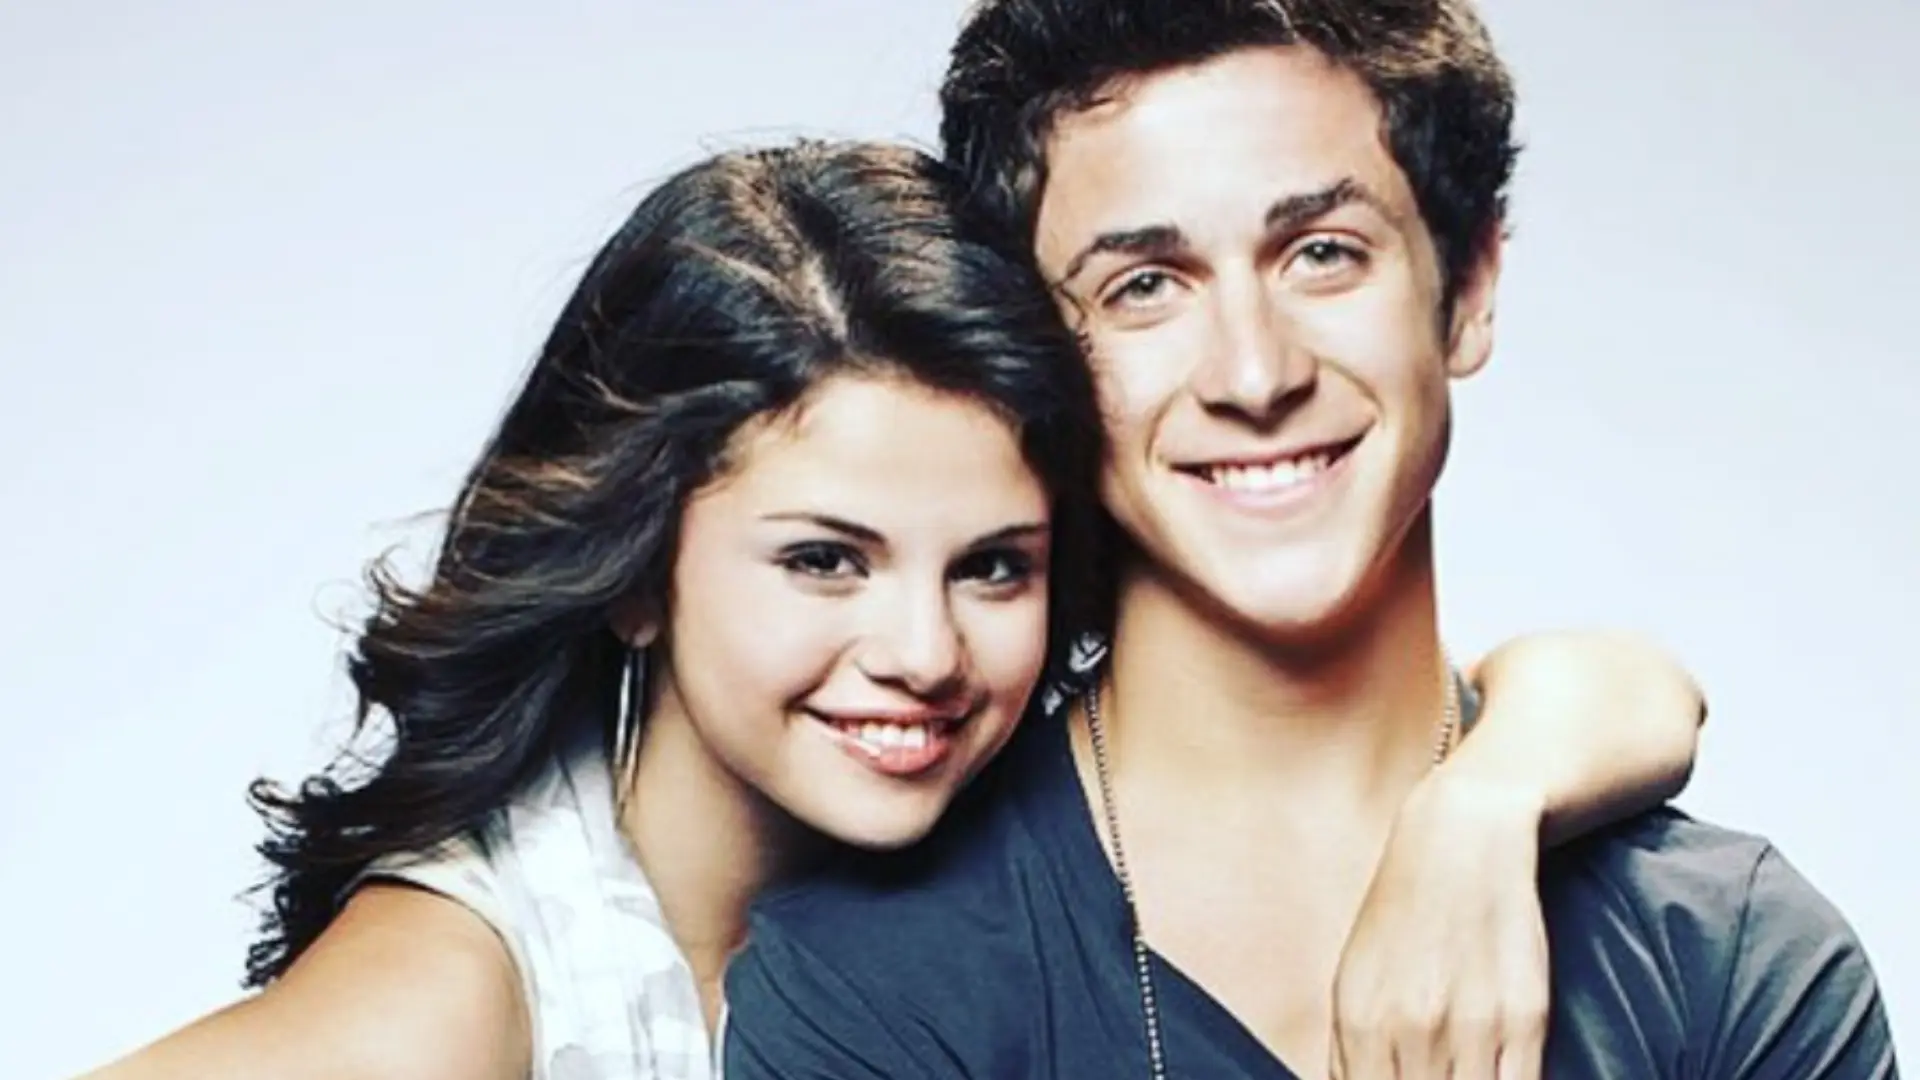 Le retour tant attendu de la série Les Sorciers de Waverly Place avec Selena Gomez et David Henrie - Instagram David Henrie